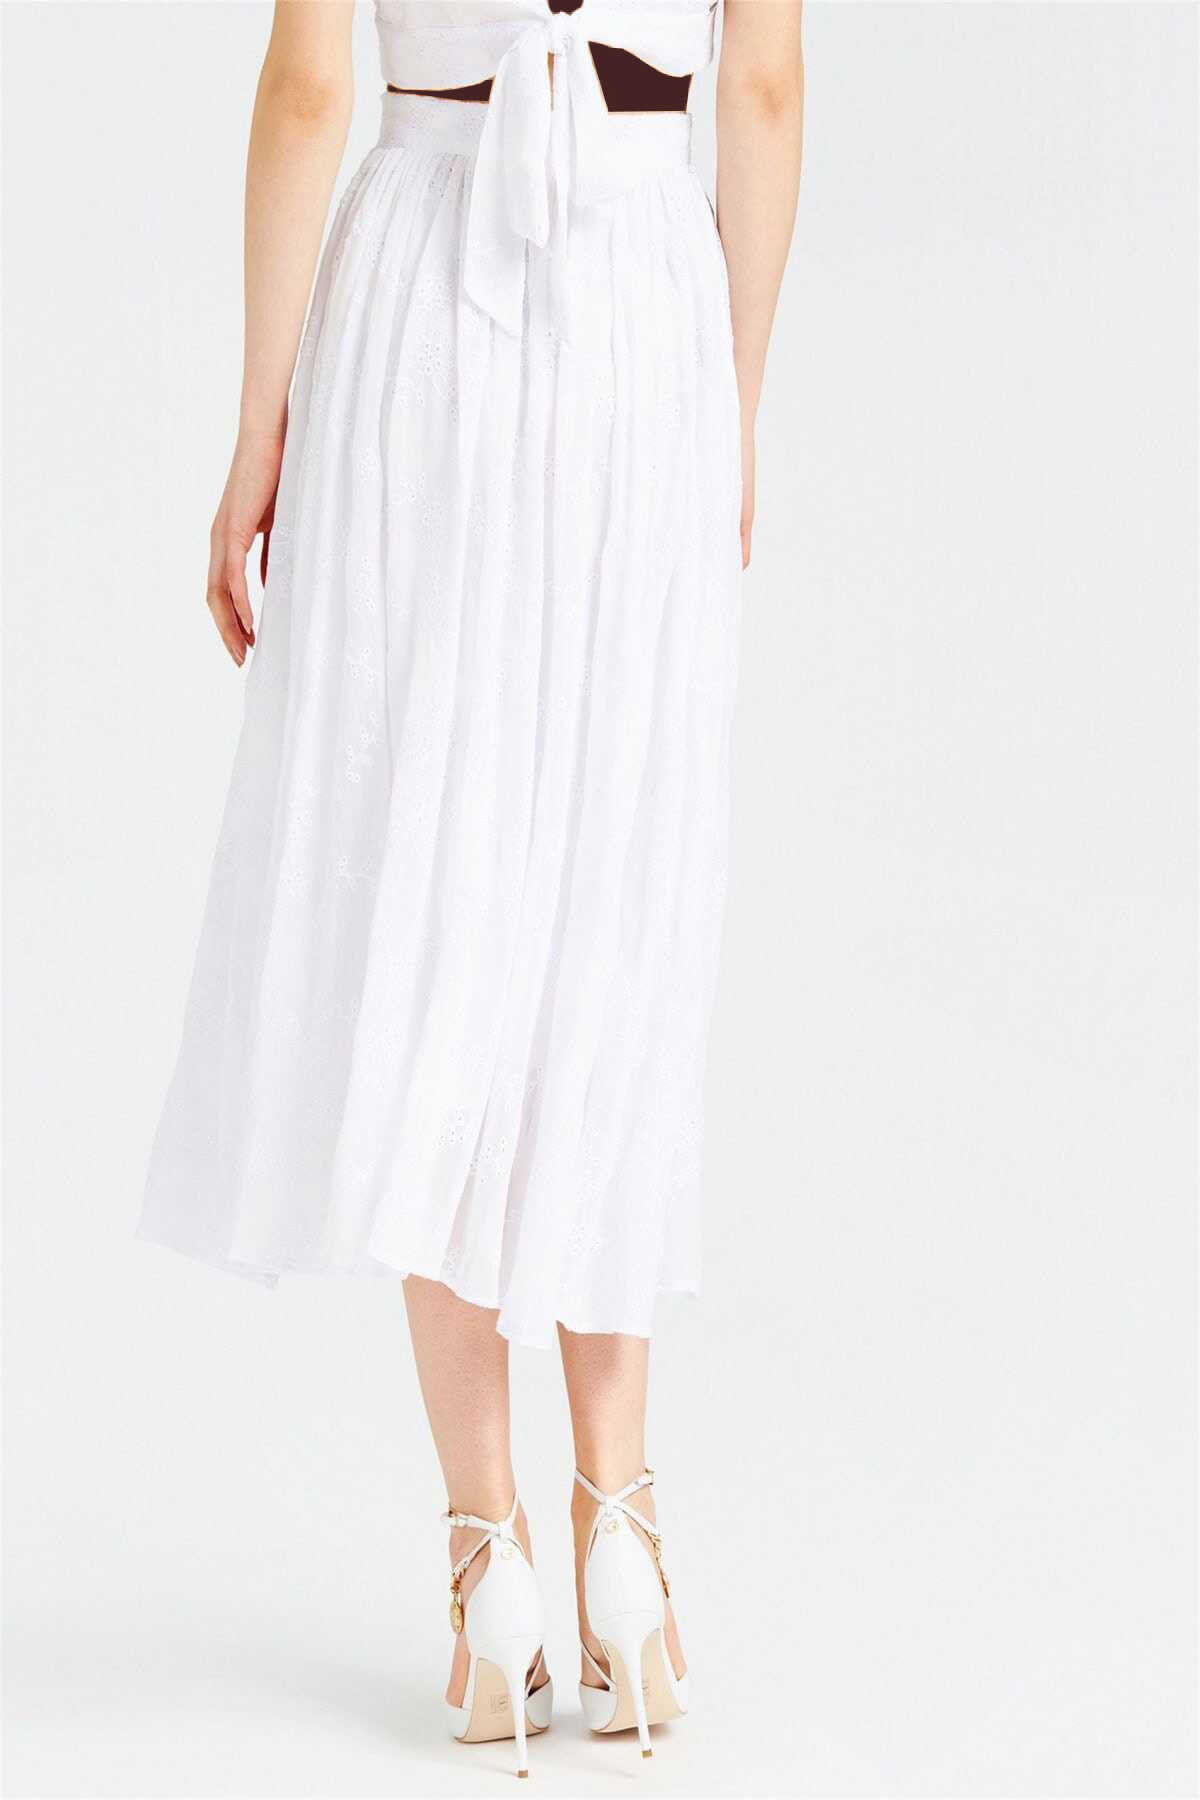 دامن بلند زنانه توری طرح دار سفید برند Guess 